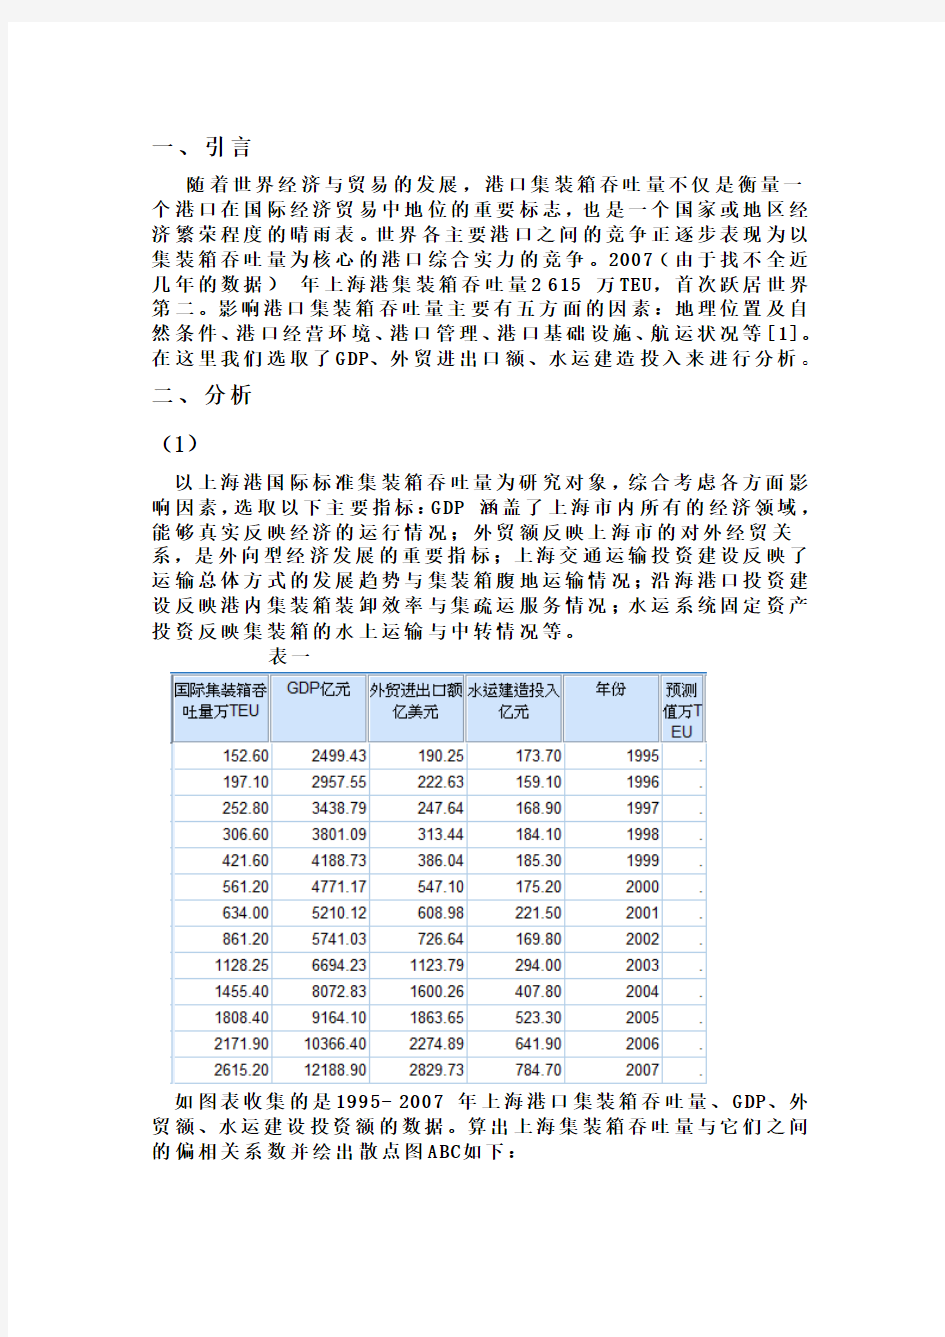 上海港国际吞吐量统计学报告